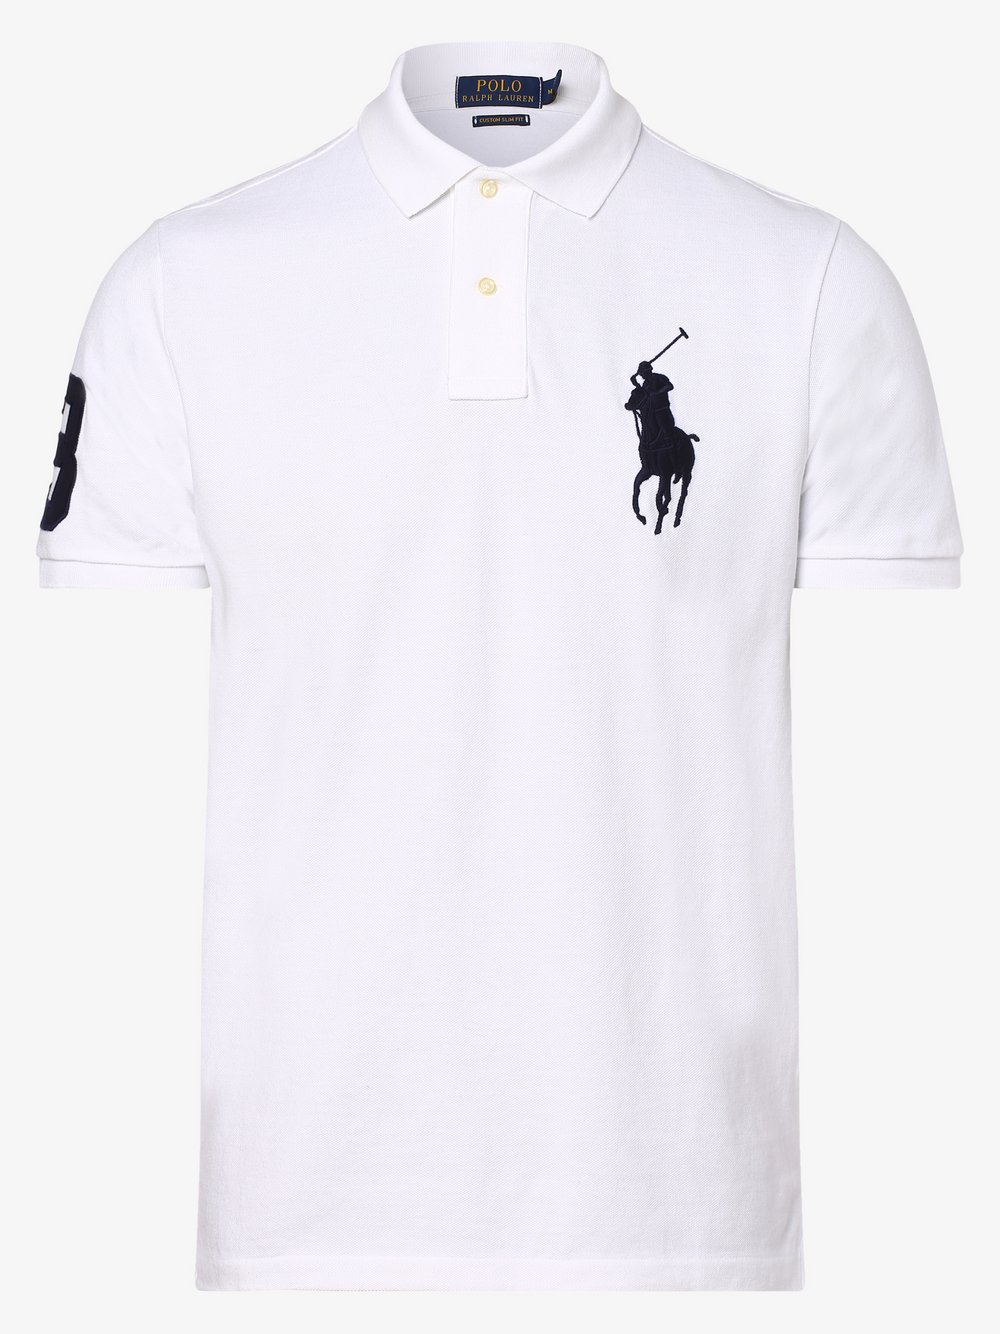 Herren Bekleidung Shirts Poloshirts INT M Polo Ralph Lauren Herren Poloshirt Gr 